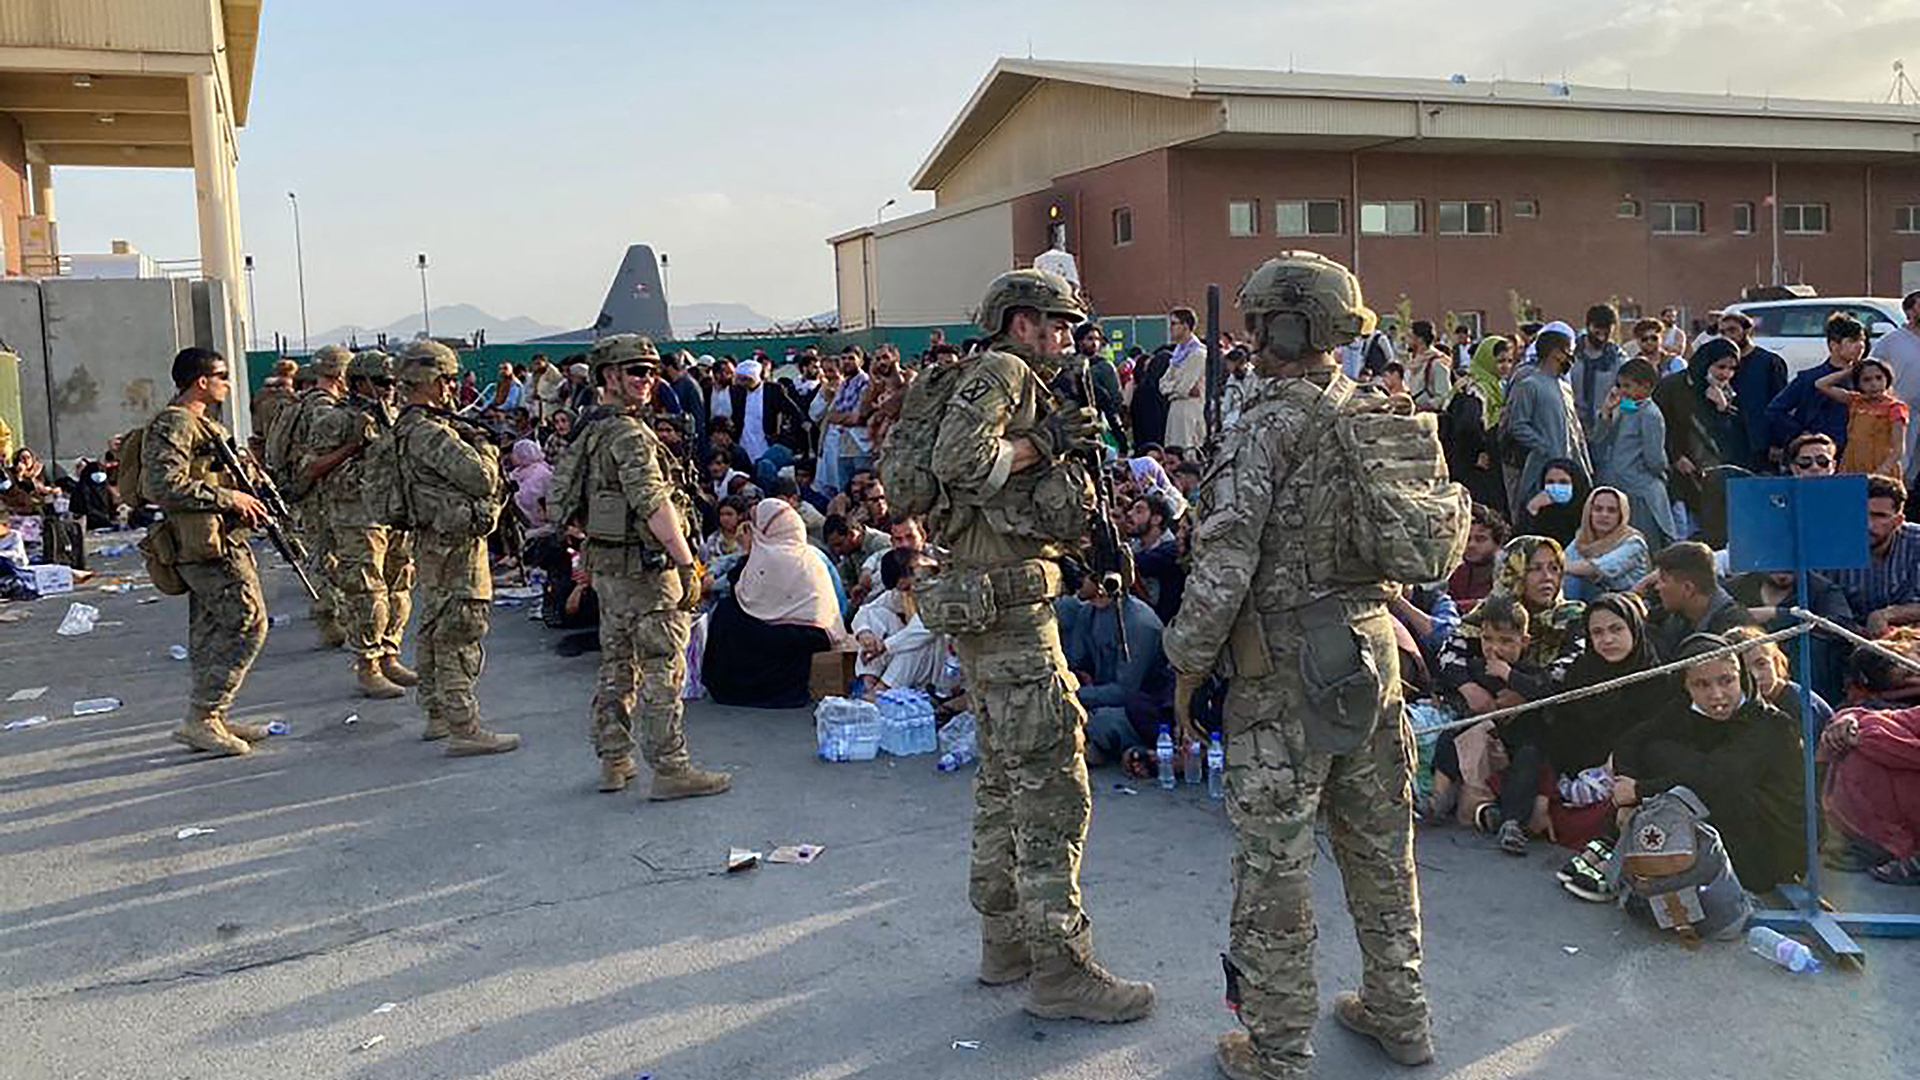 US-Soldaten stehen auf dem Militärflughafen in Kabul Wache, während afghanische Bürger darauf warten, ein US-Militärflugzeug zu besteigen.